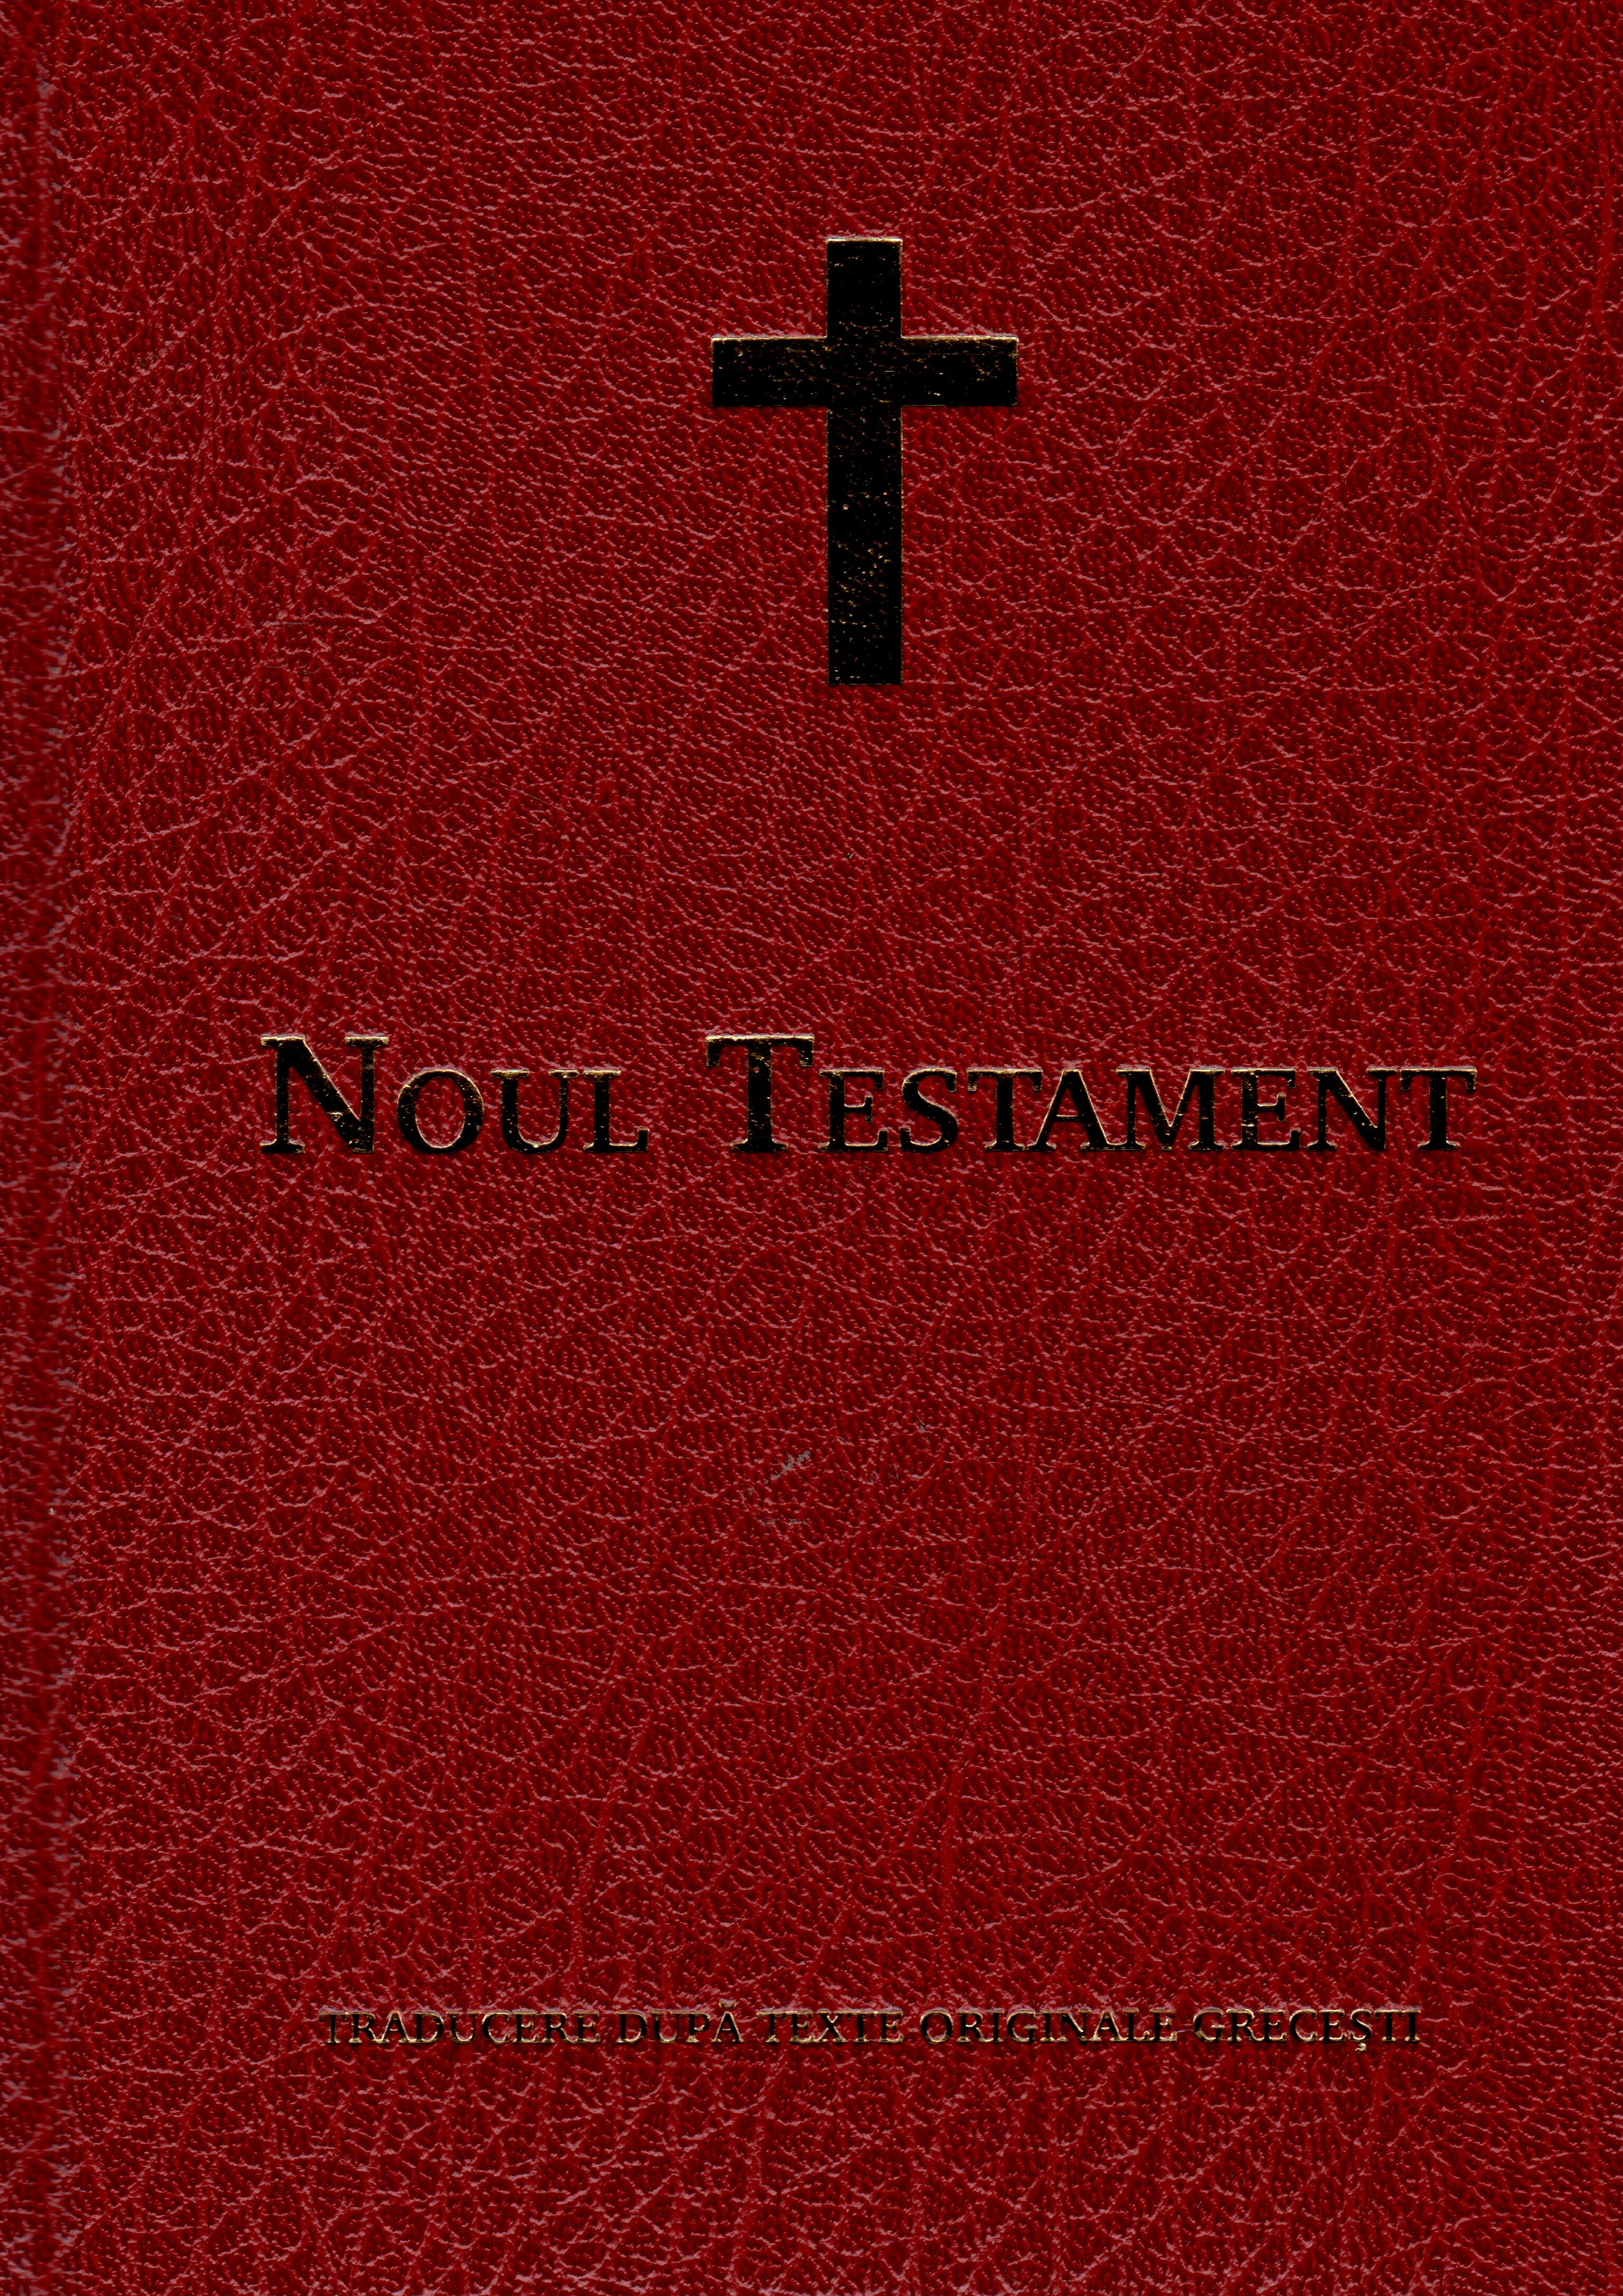 Noul Testament - traducere după texte originale grecești